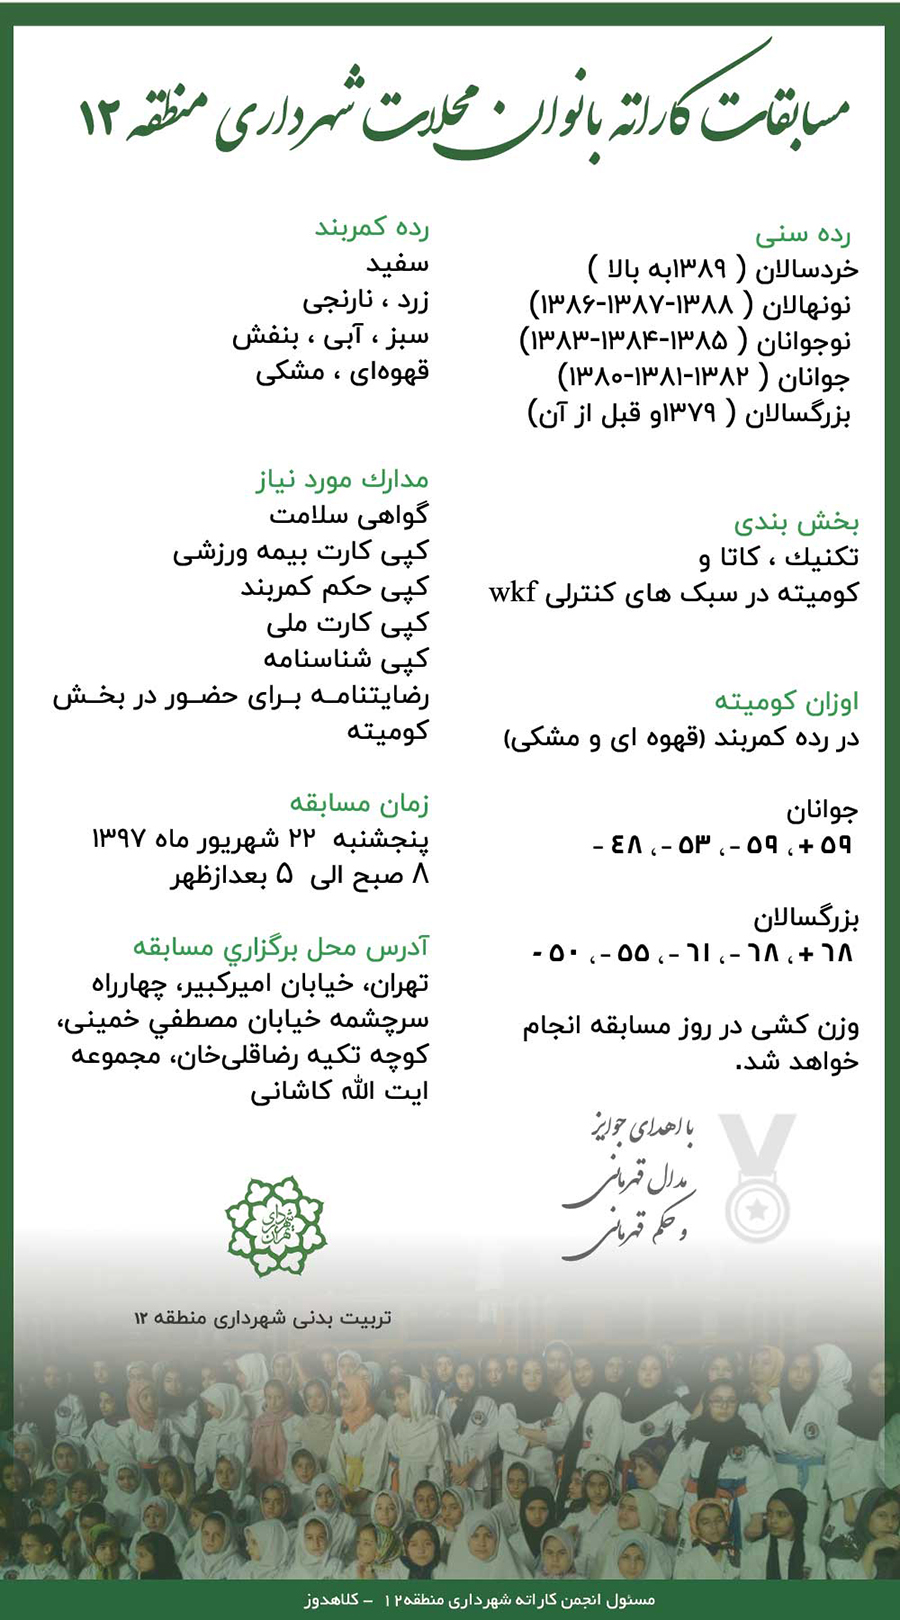 مسابقات کاراته بانوان محلات شهرداری منطقه۱۲شهریور ۹۷